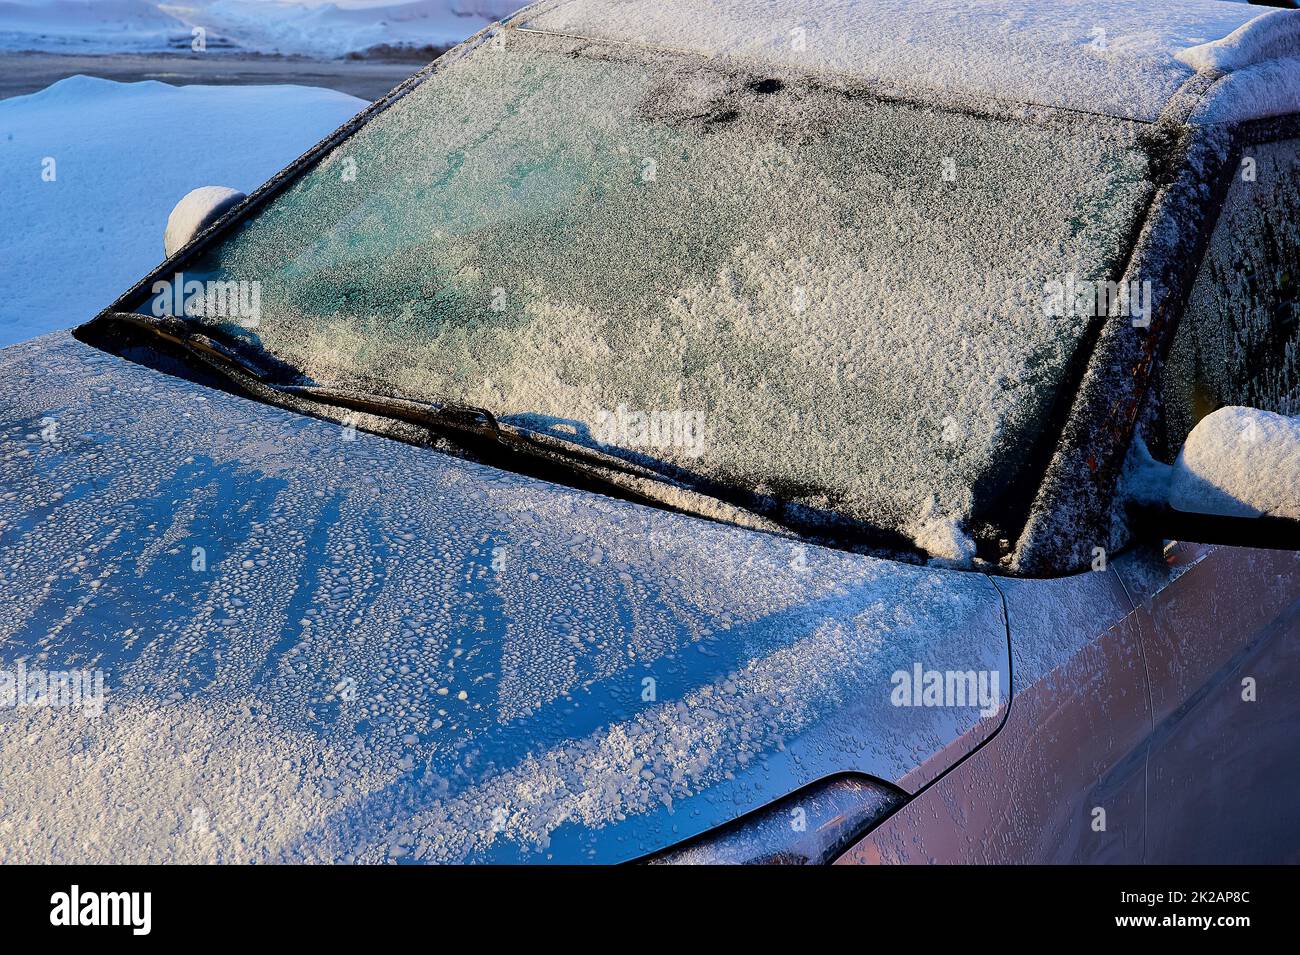 Parabrezza coperti di ghiaccio e serrature dell'auto che non si aprono per  il gelo? - Strada Facendo